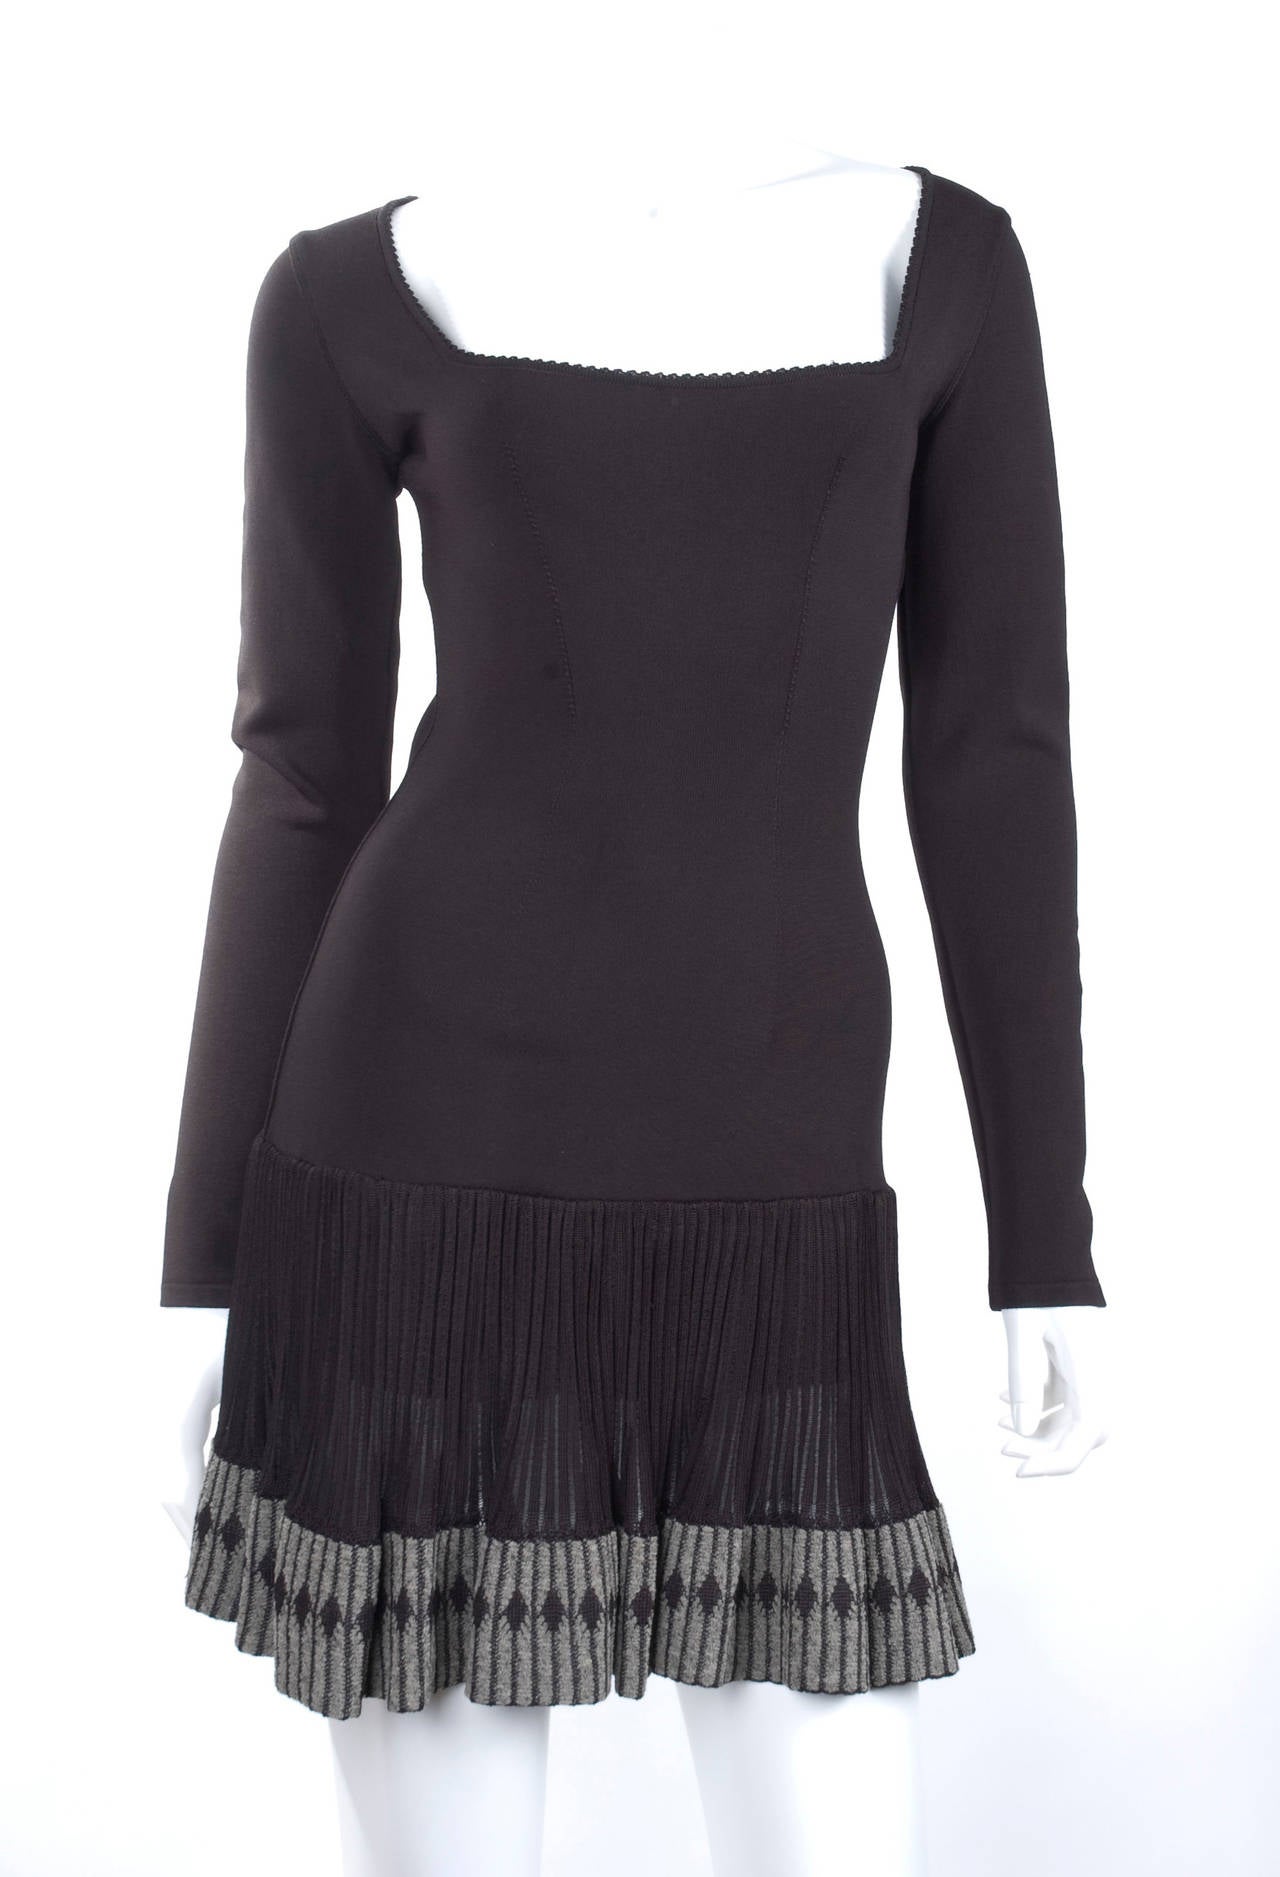 80's Black Alaia Knit Dress.
Size M